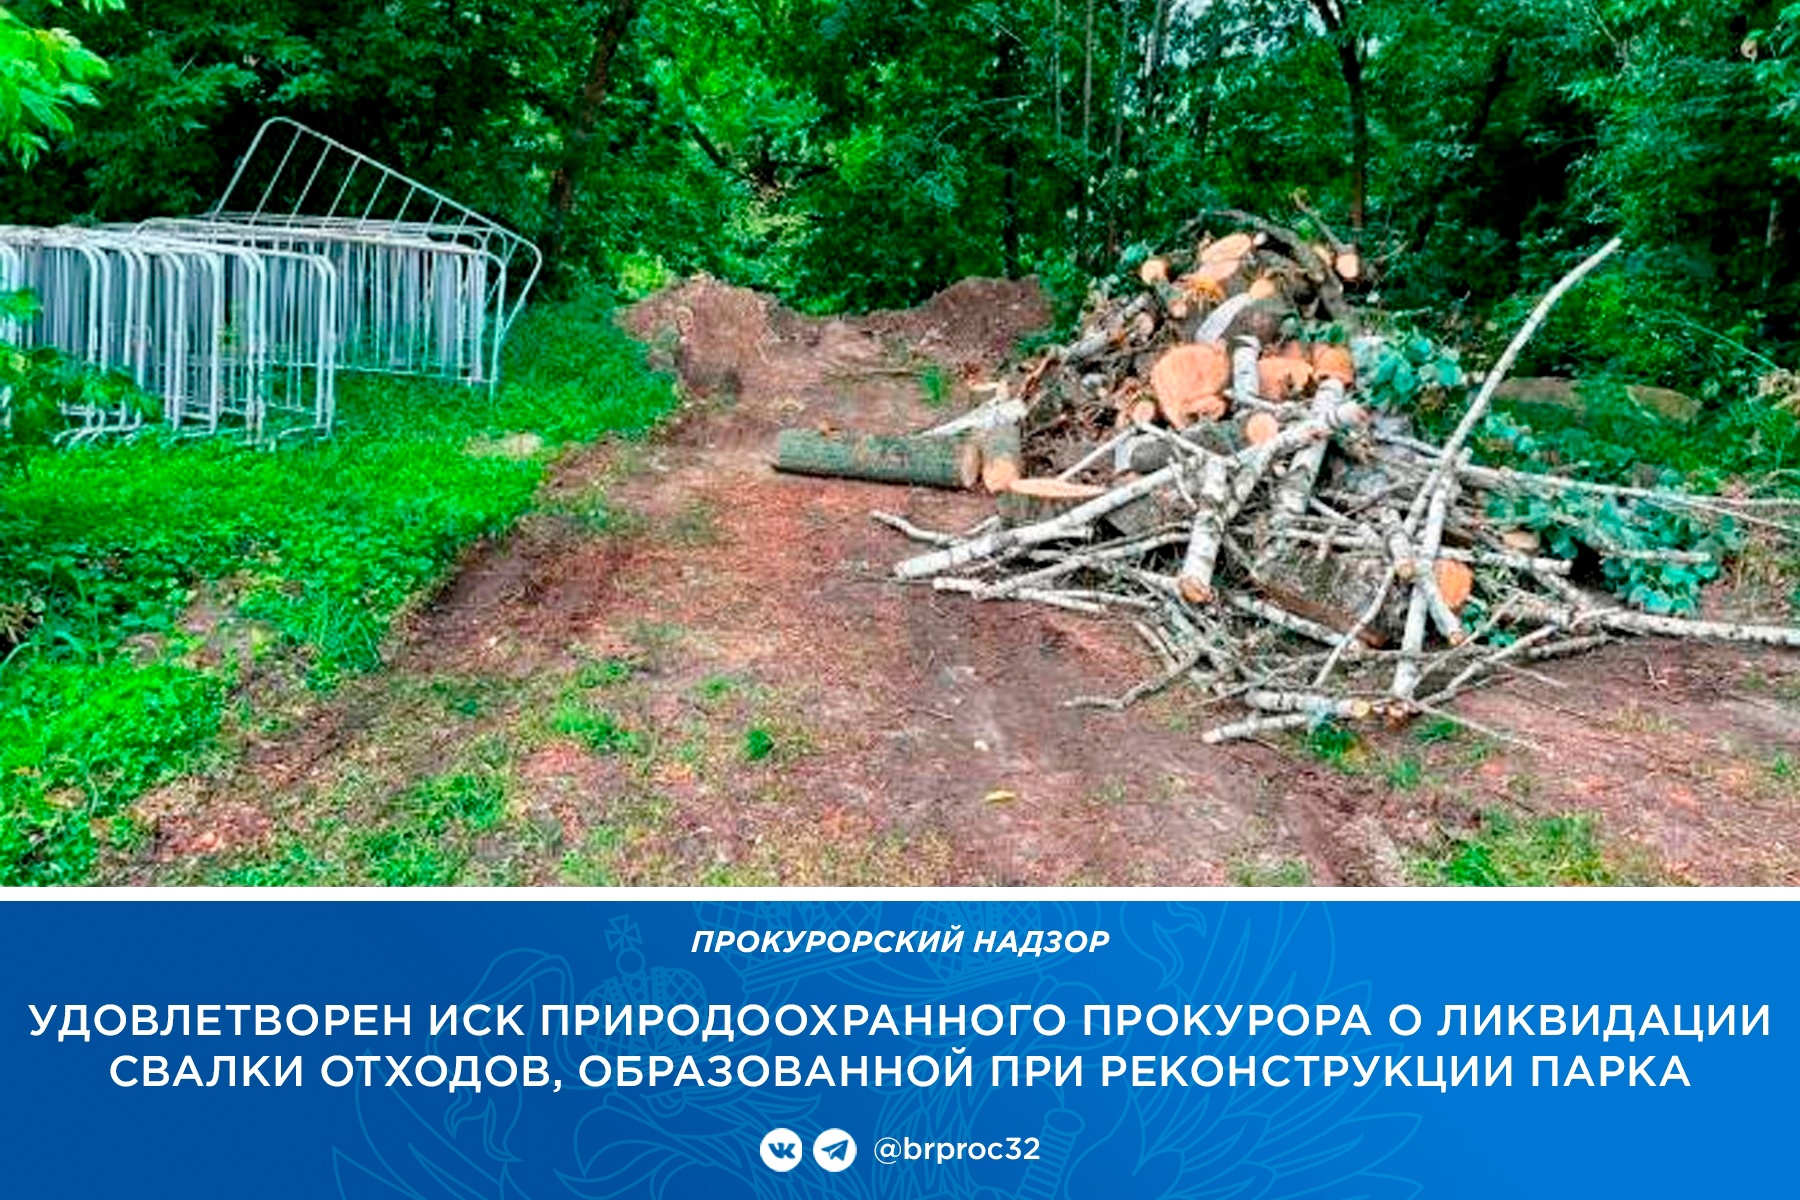 Прокуратура требует ликвидировать свалку в парке имени 1000-летия Брянска